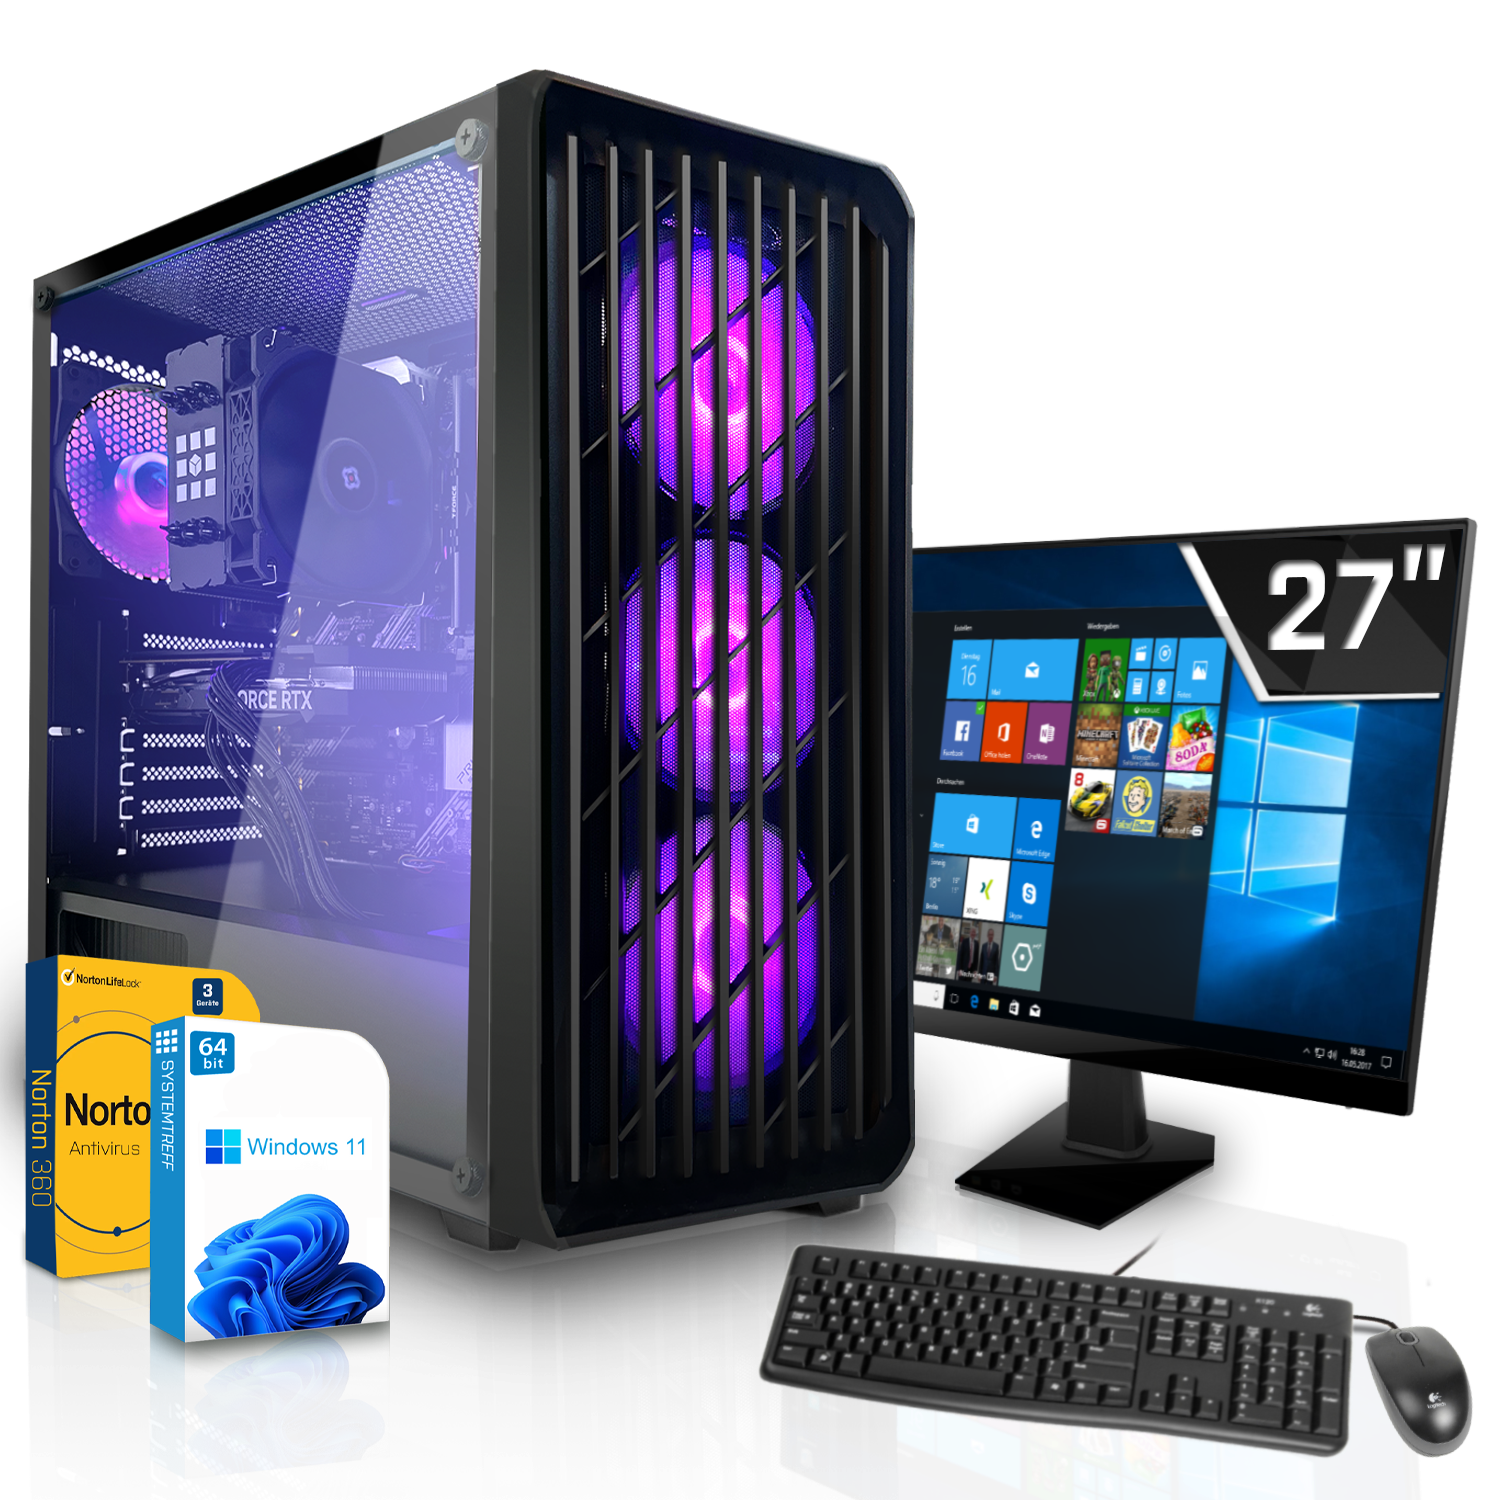 SYSTEMTREFF Gaming Komplett Intel mit Core Prozessor, mit 4060Ti GeForce 16 i7-12700F GDDR6 GB GB GB 1000 RAM, Nvidia DLSS 8GB Komplett 8 i7-12700F, 3, RTX mSSD, PC